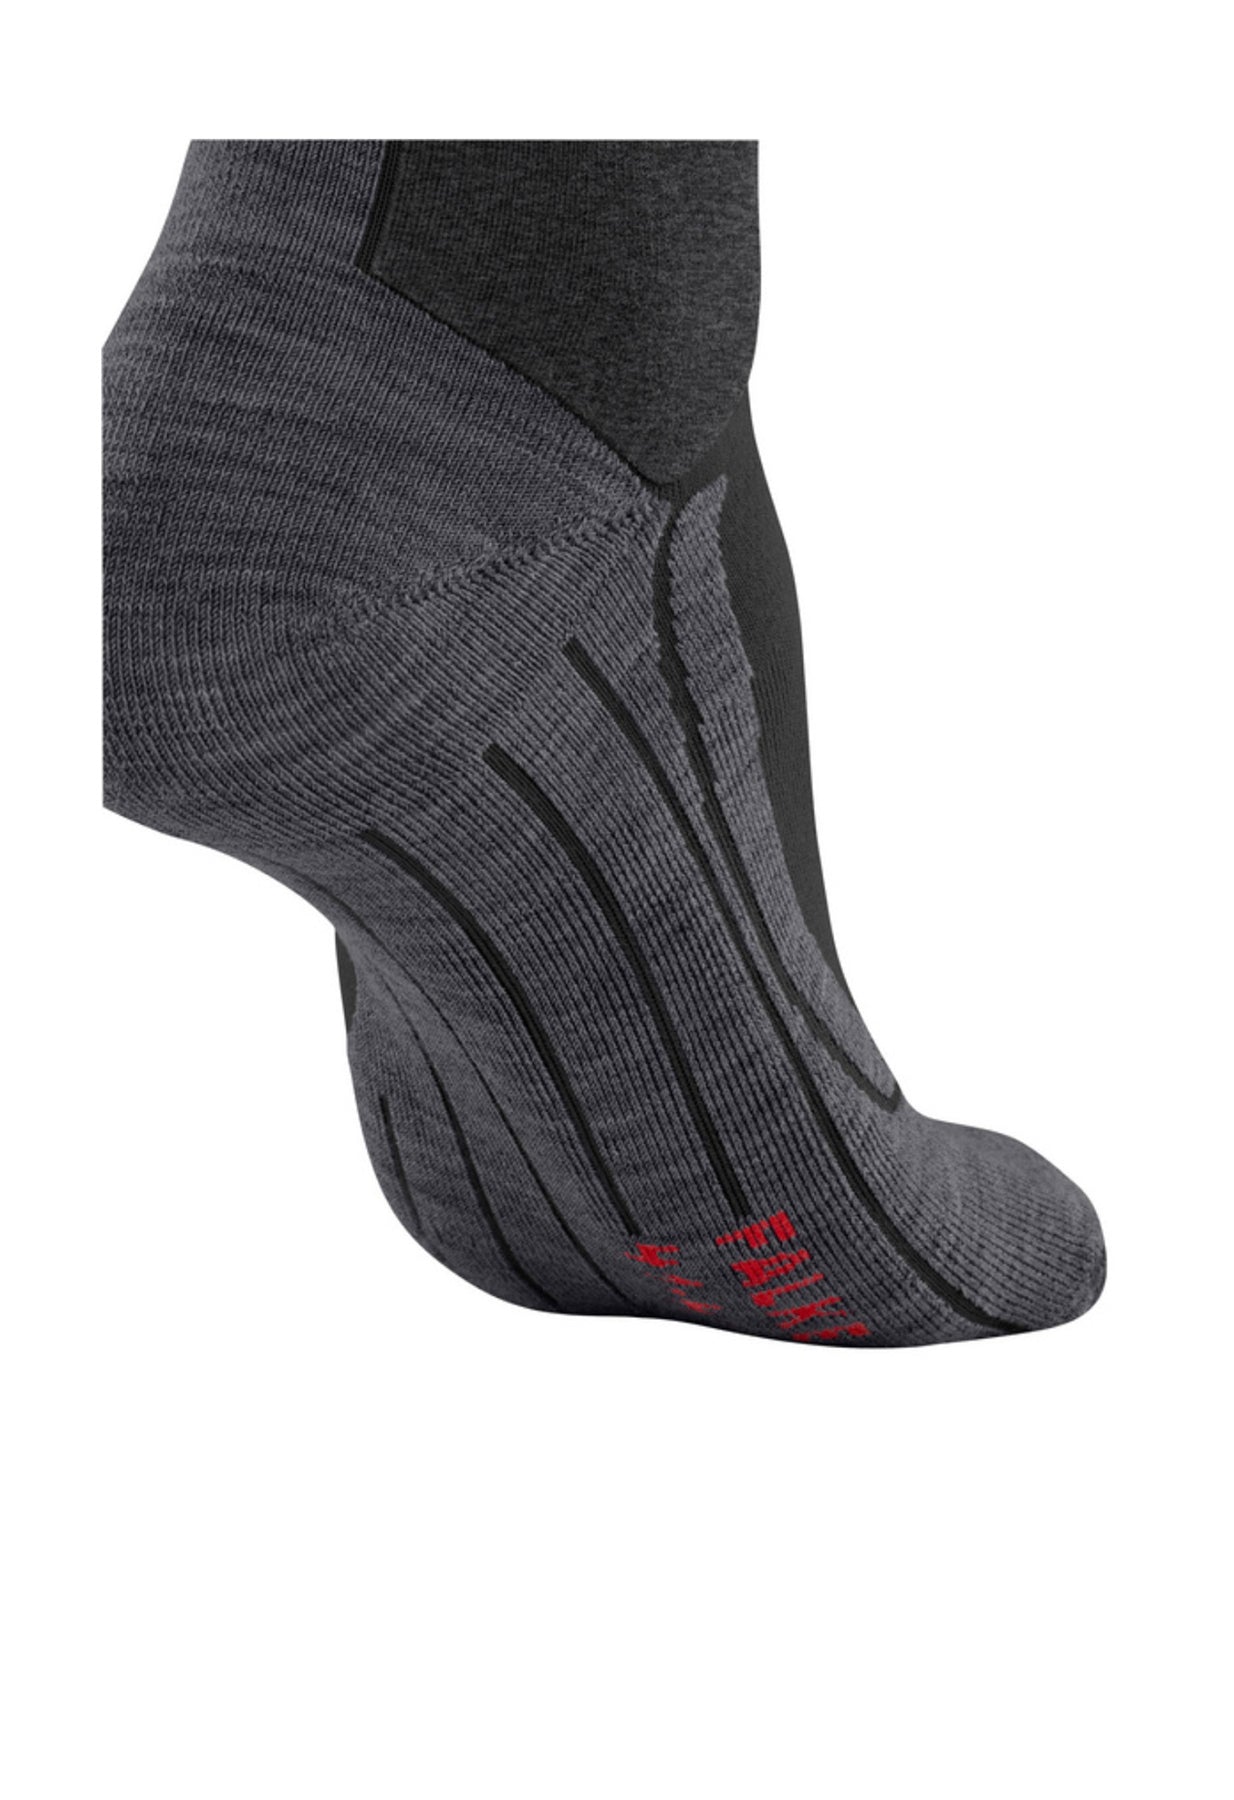 Falke SK4 Energizing Wool Ladies Ski Socks in Black Neon